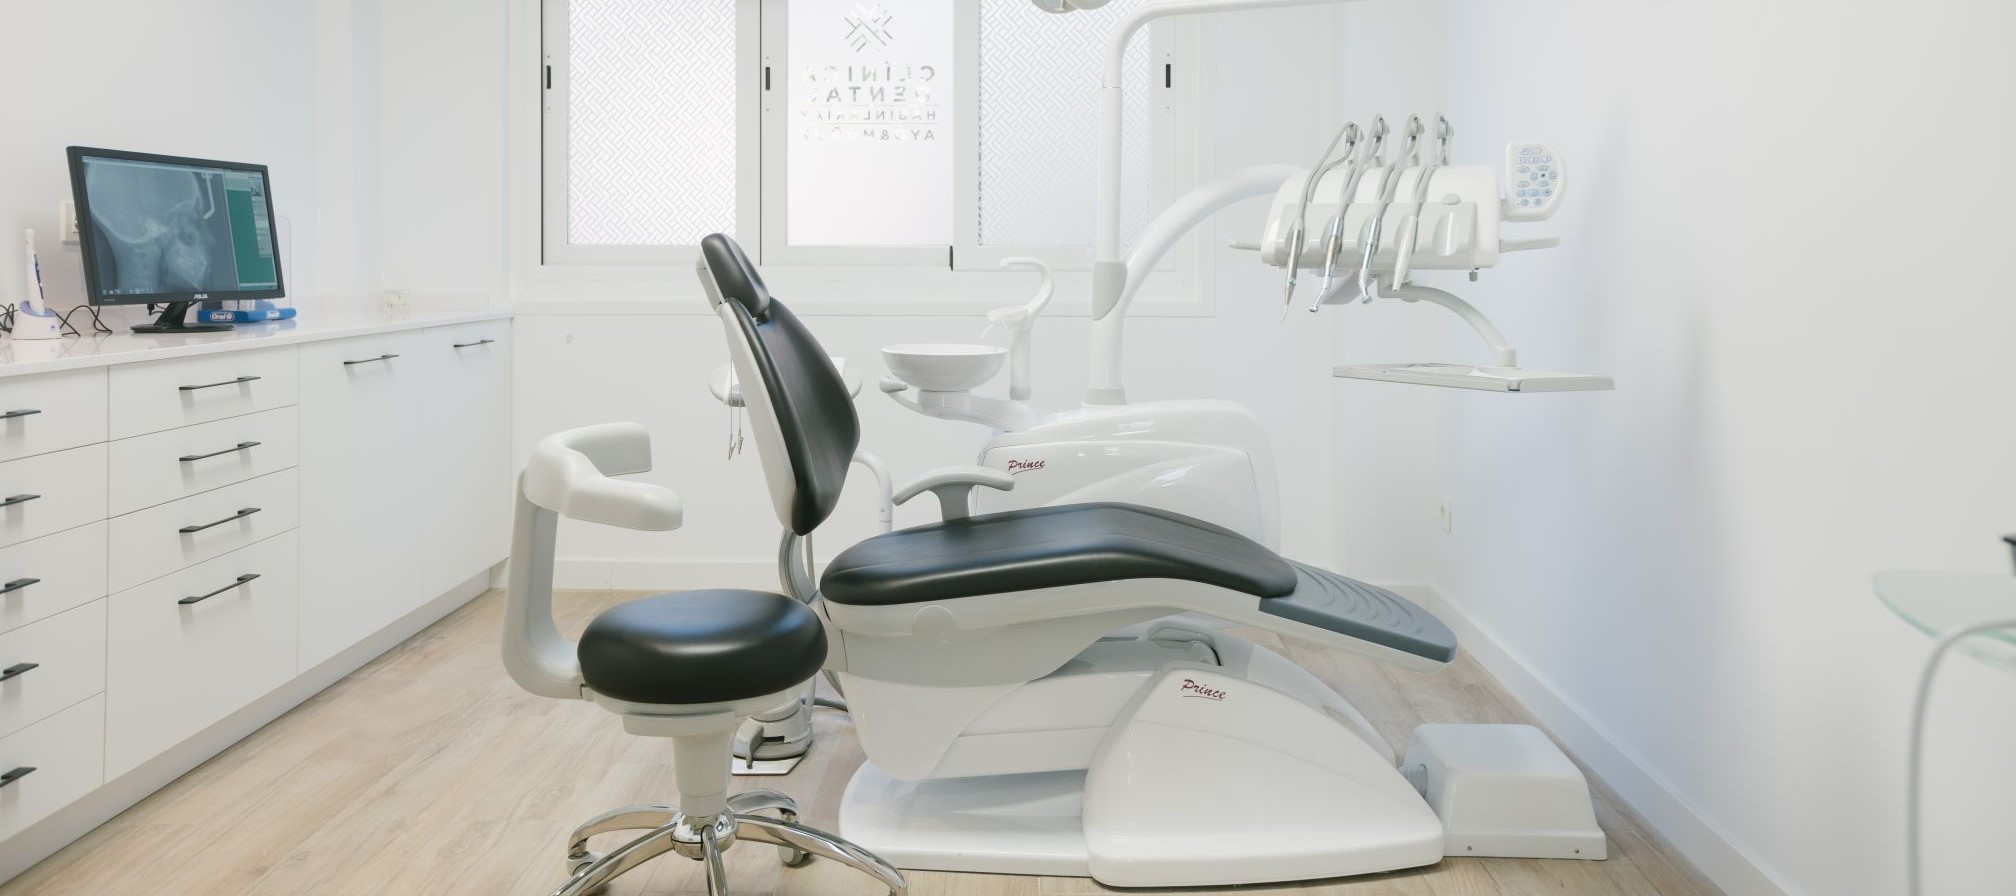 clinica-dental-ayo-munoz-instalaciones